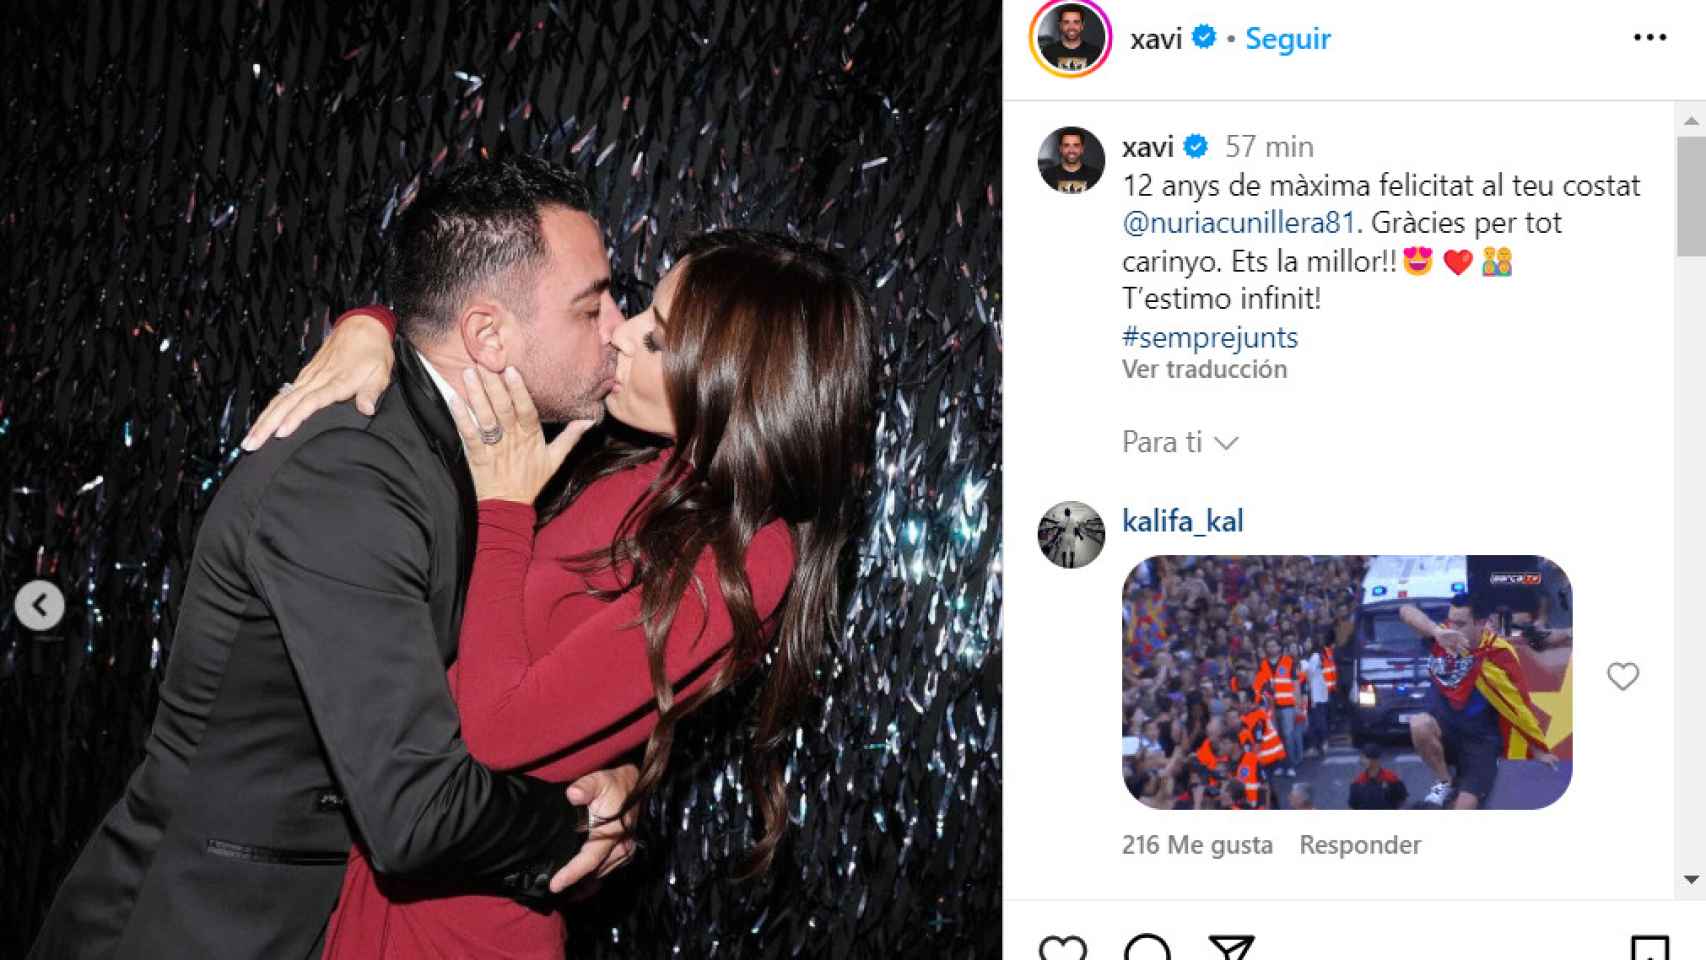 La romántica felicitación de Xavi a su esposa, Nuria Cunillera